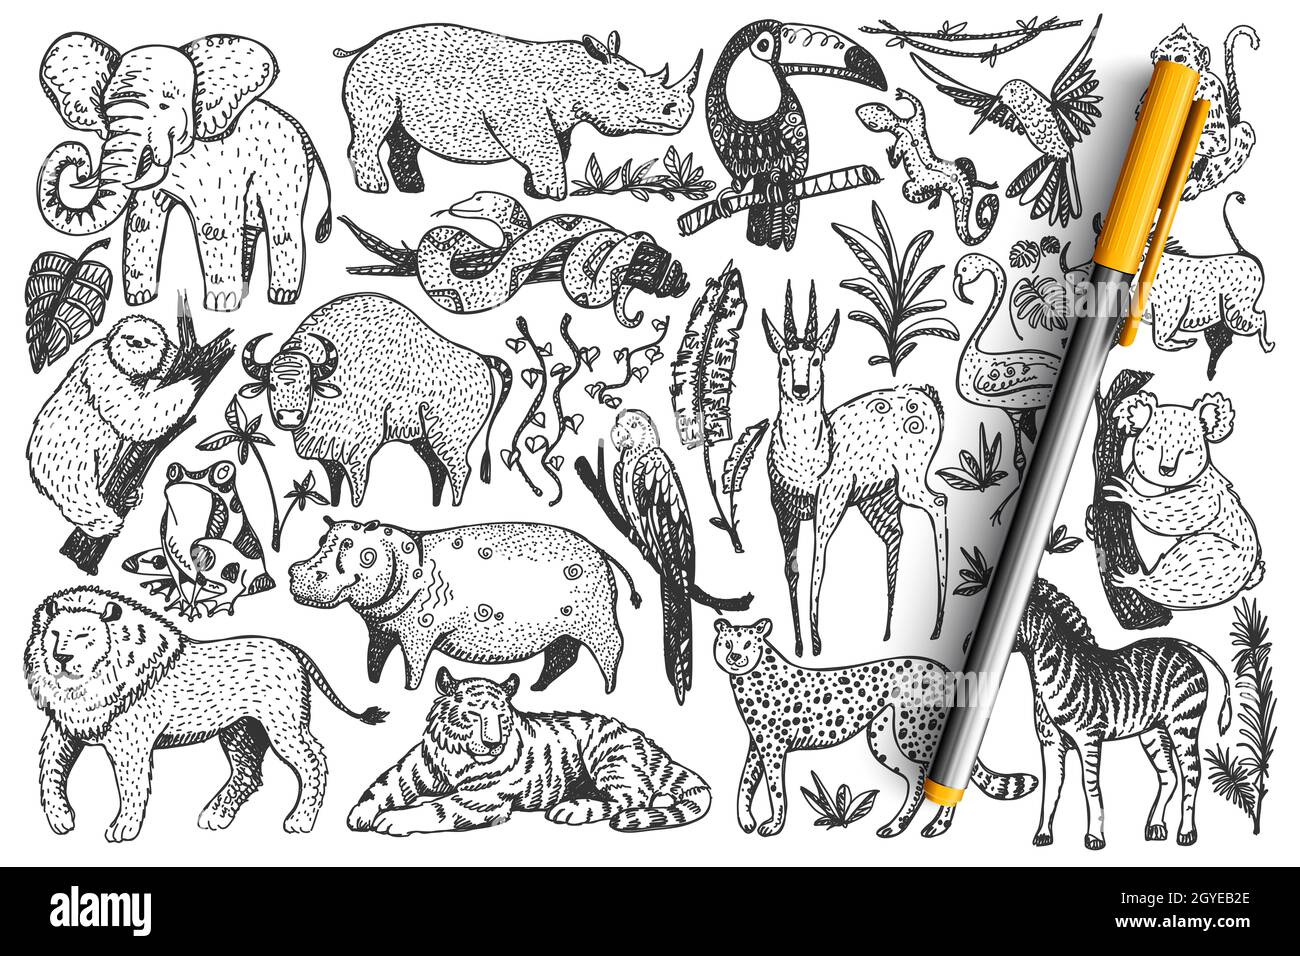 Ensemble de doodle pour animaux.Collection de drôle dessiné à la main de jolis mammifères sauvages de safari africains isolés sur fond blanc.Illustration des serpents de lion léopard Banque D'Images